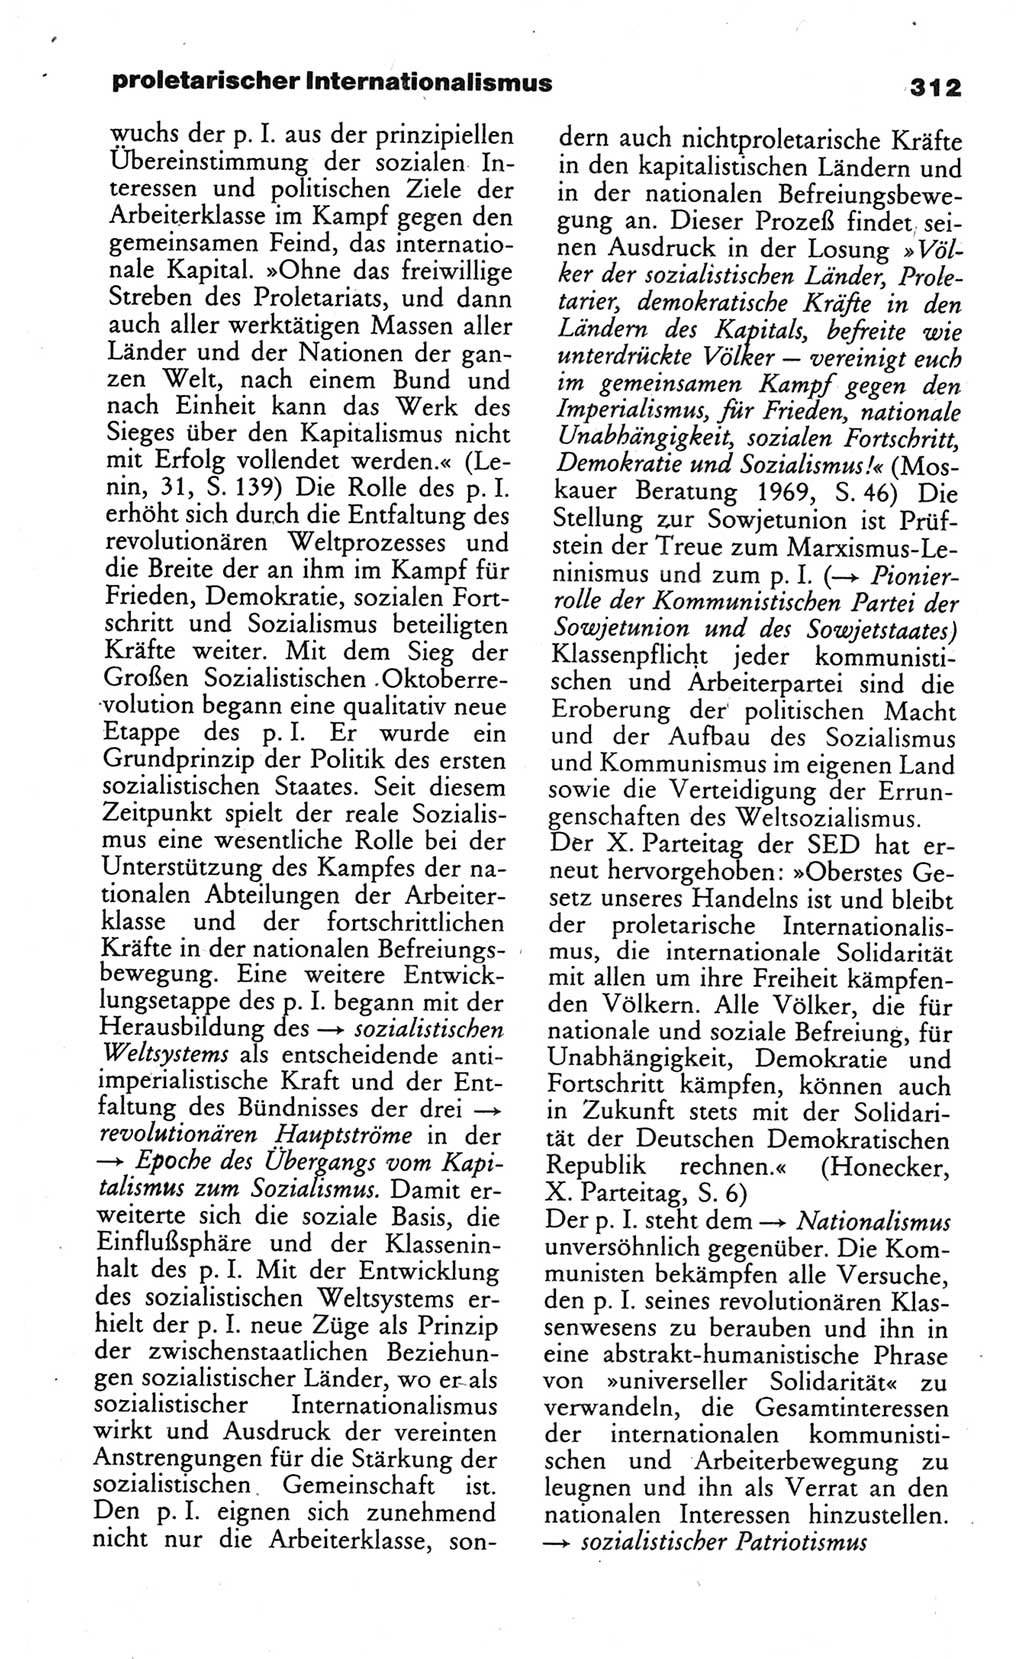 Wörterbuch des wissenschaftlichen Kommunismus [Deutsche Demokratische Republik (DDR)] 1984, Seite 312 (Wb. wiss. Komm. DDR 1984, S. 312)